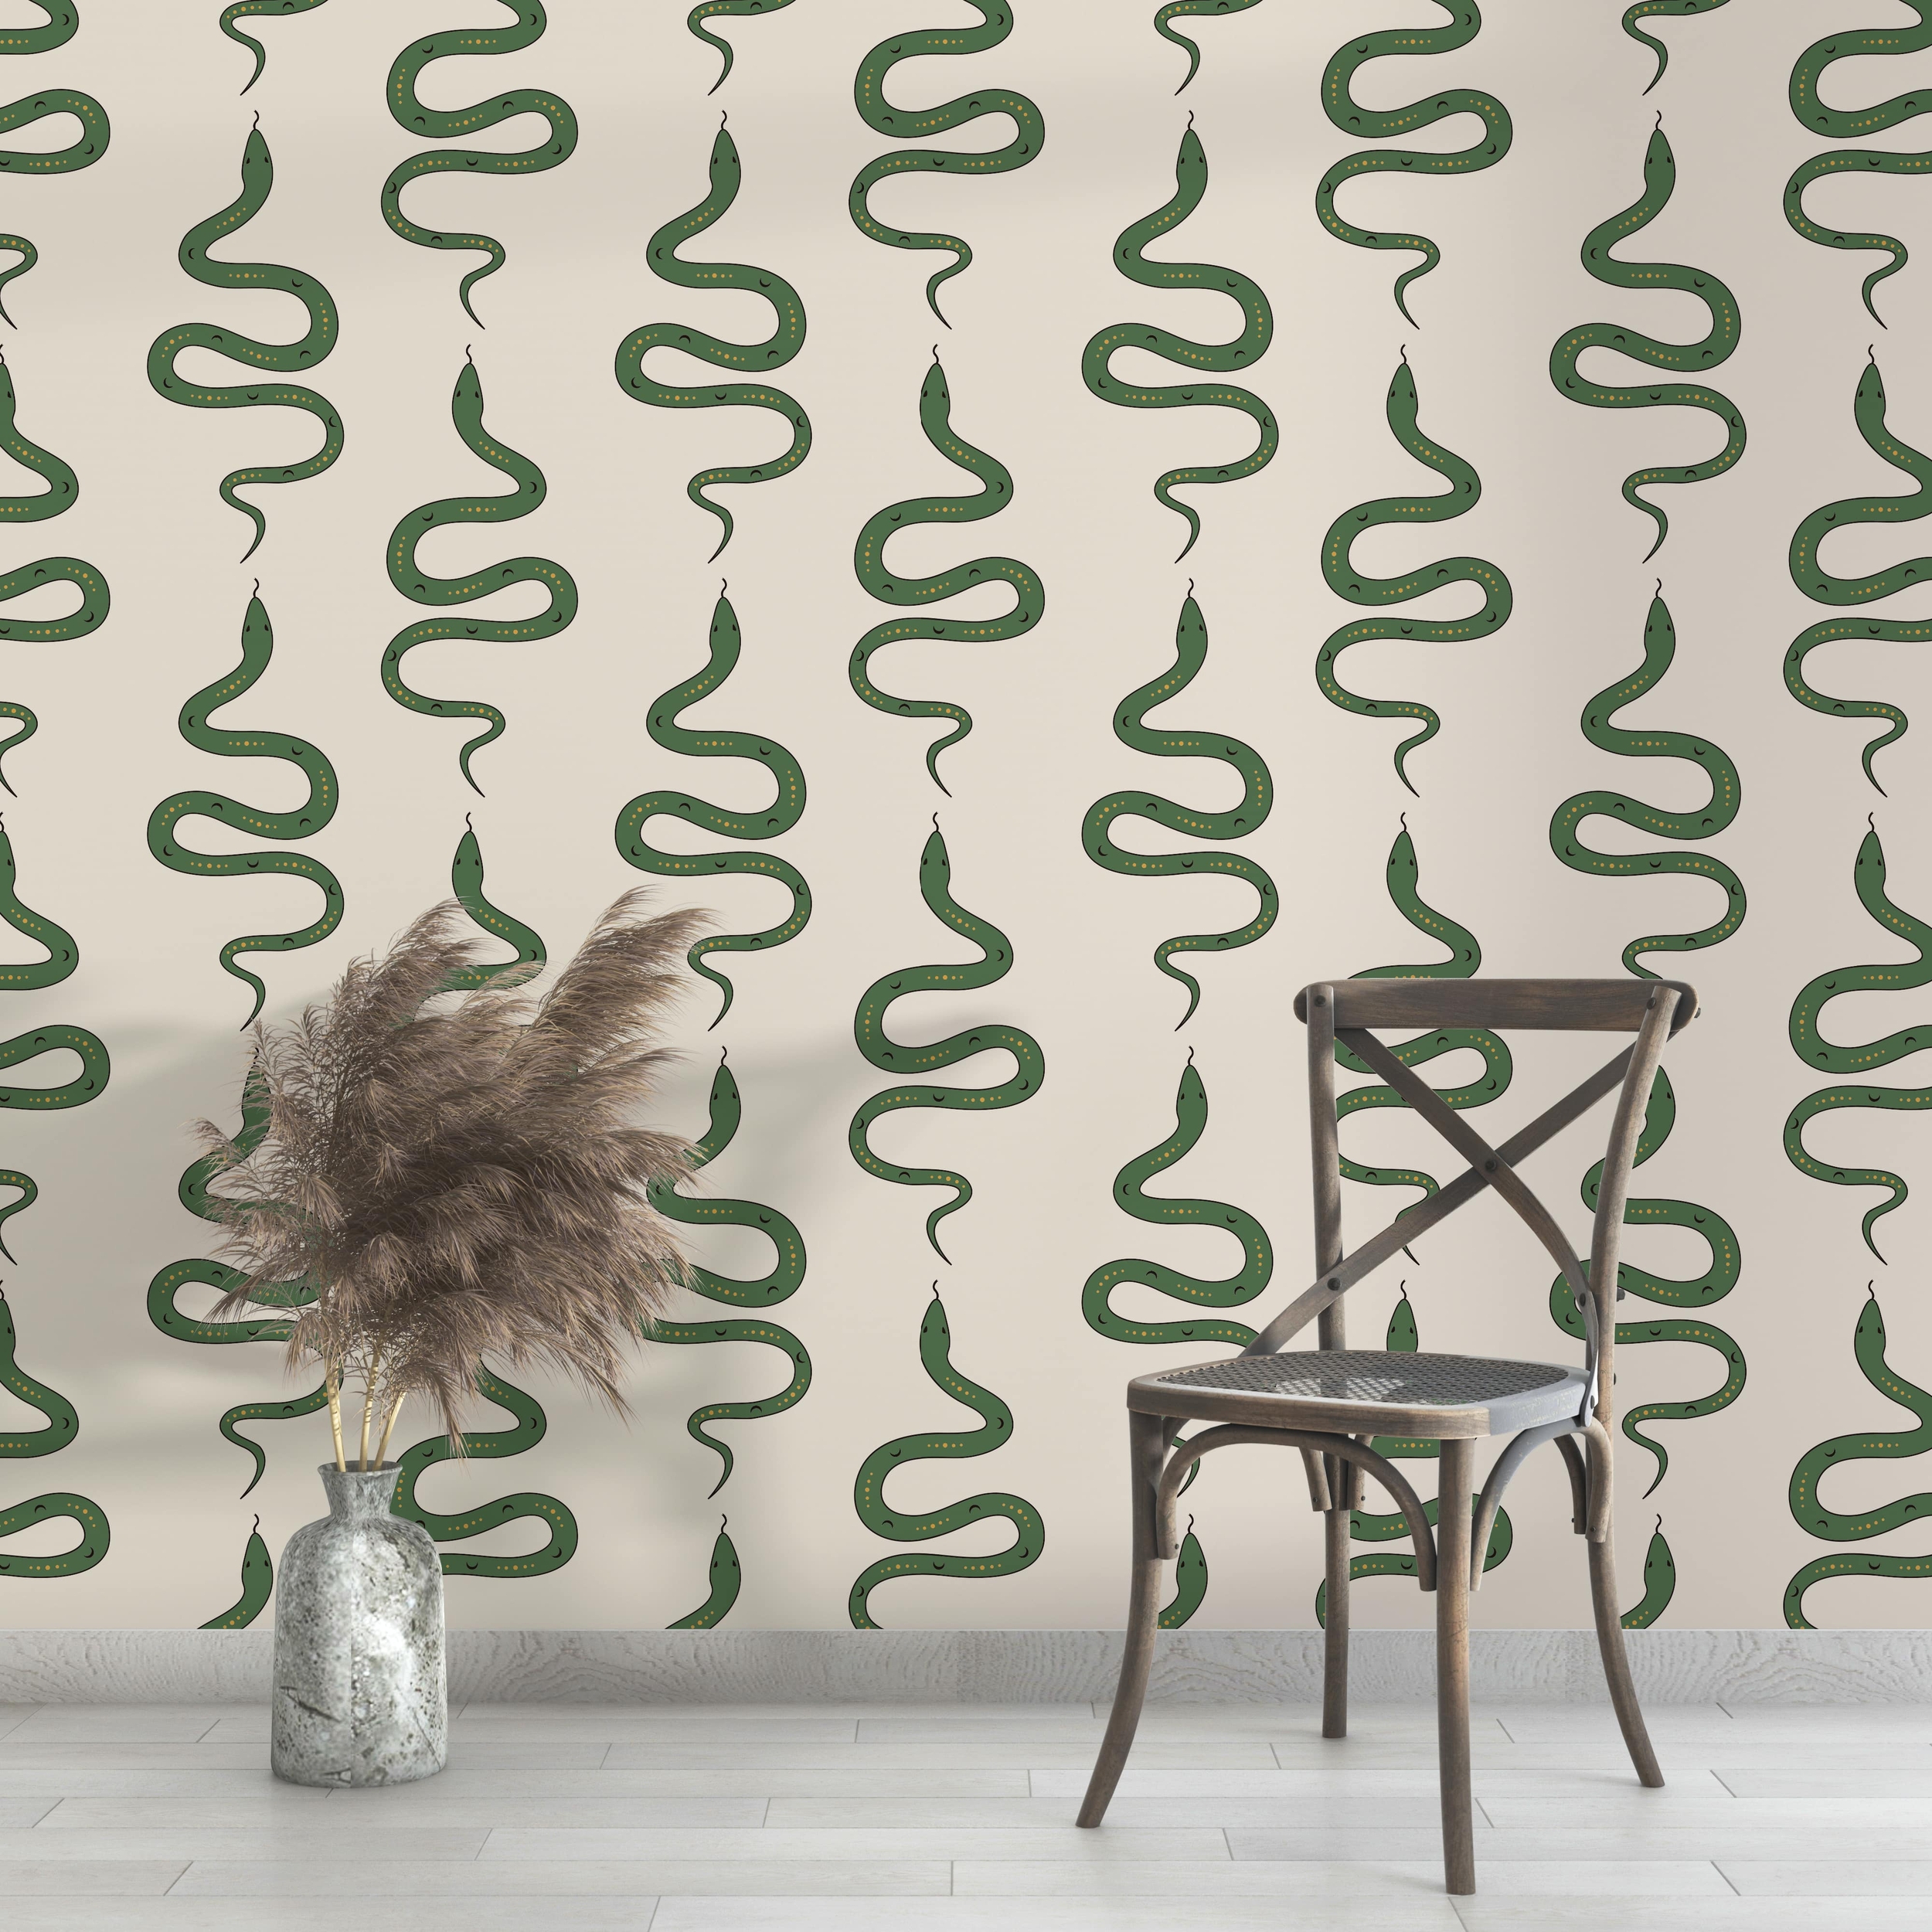 PP107-mur-papier-peint-adhesif-decoratif-revetement-vinyle-motifs-serpent-renovation-meuble-mur-min